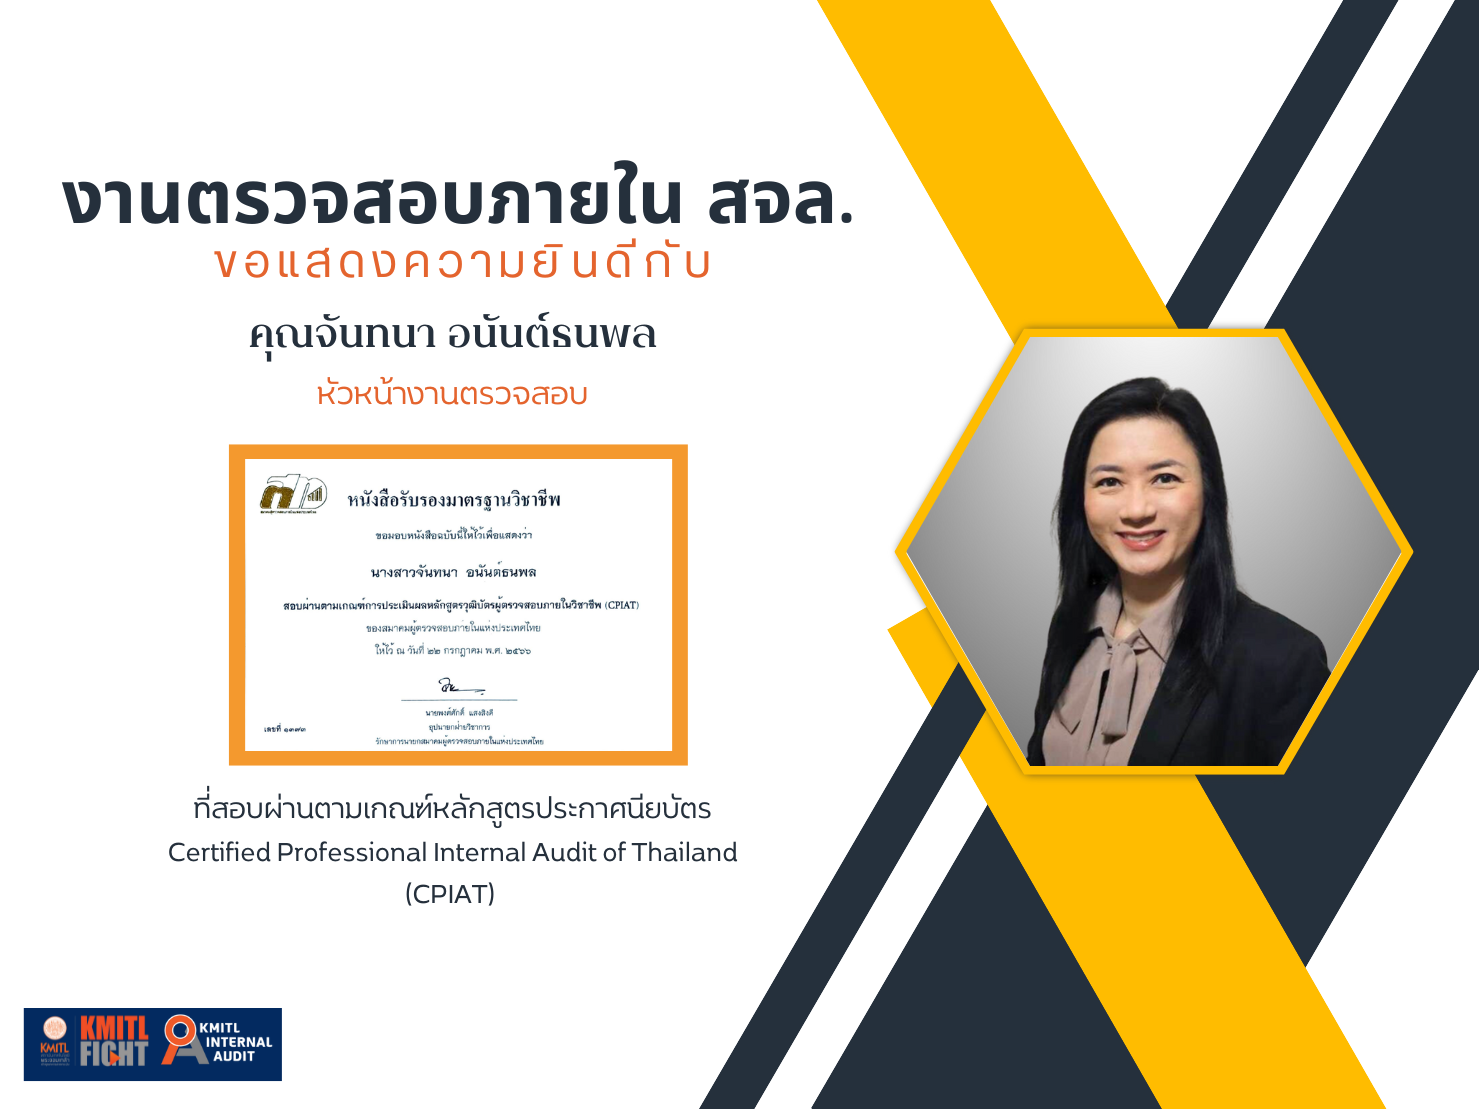 ขอแสดงความยินดีกับคุณจันทนา อนันต์ธนพล ที่สอบผ่านตามเกณฑ์หลักสูตรประกาศนียบัตร  ผู้ตรวจสอบภายในของประเทศไทย Certified Professional Internal Audit of Thailand (CPIAT)